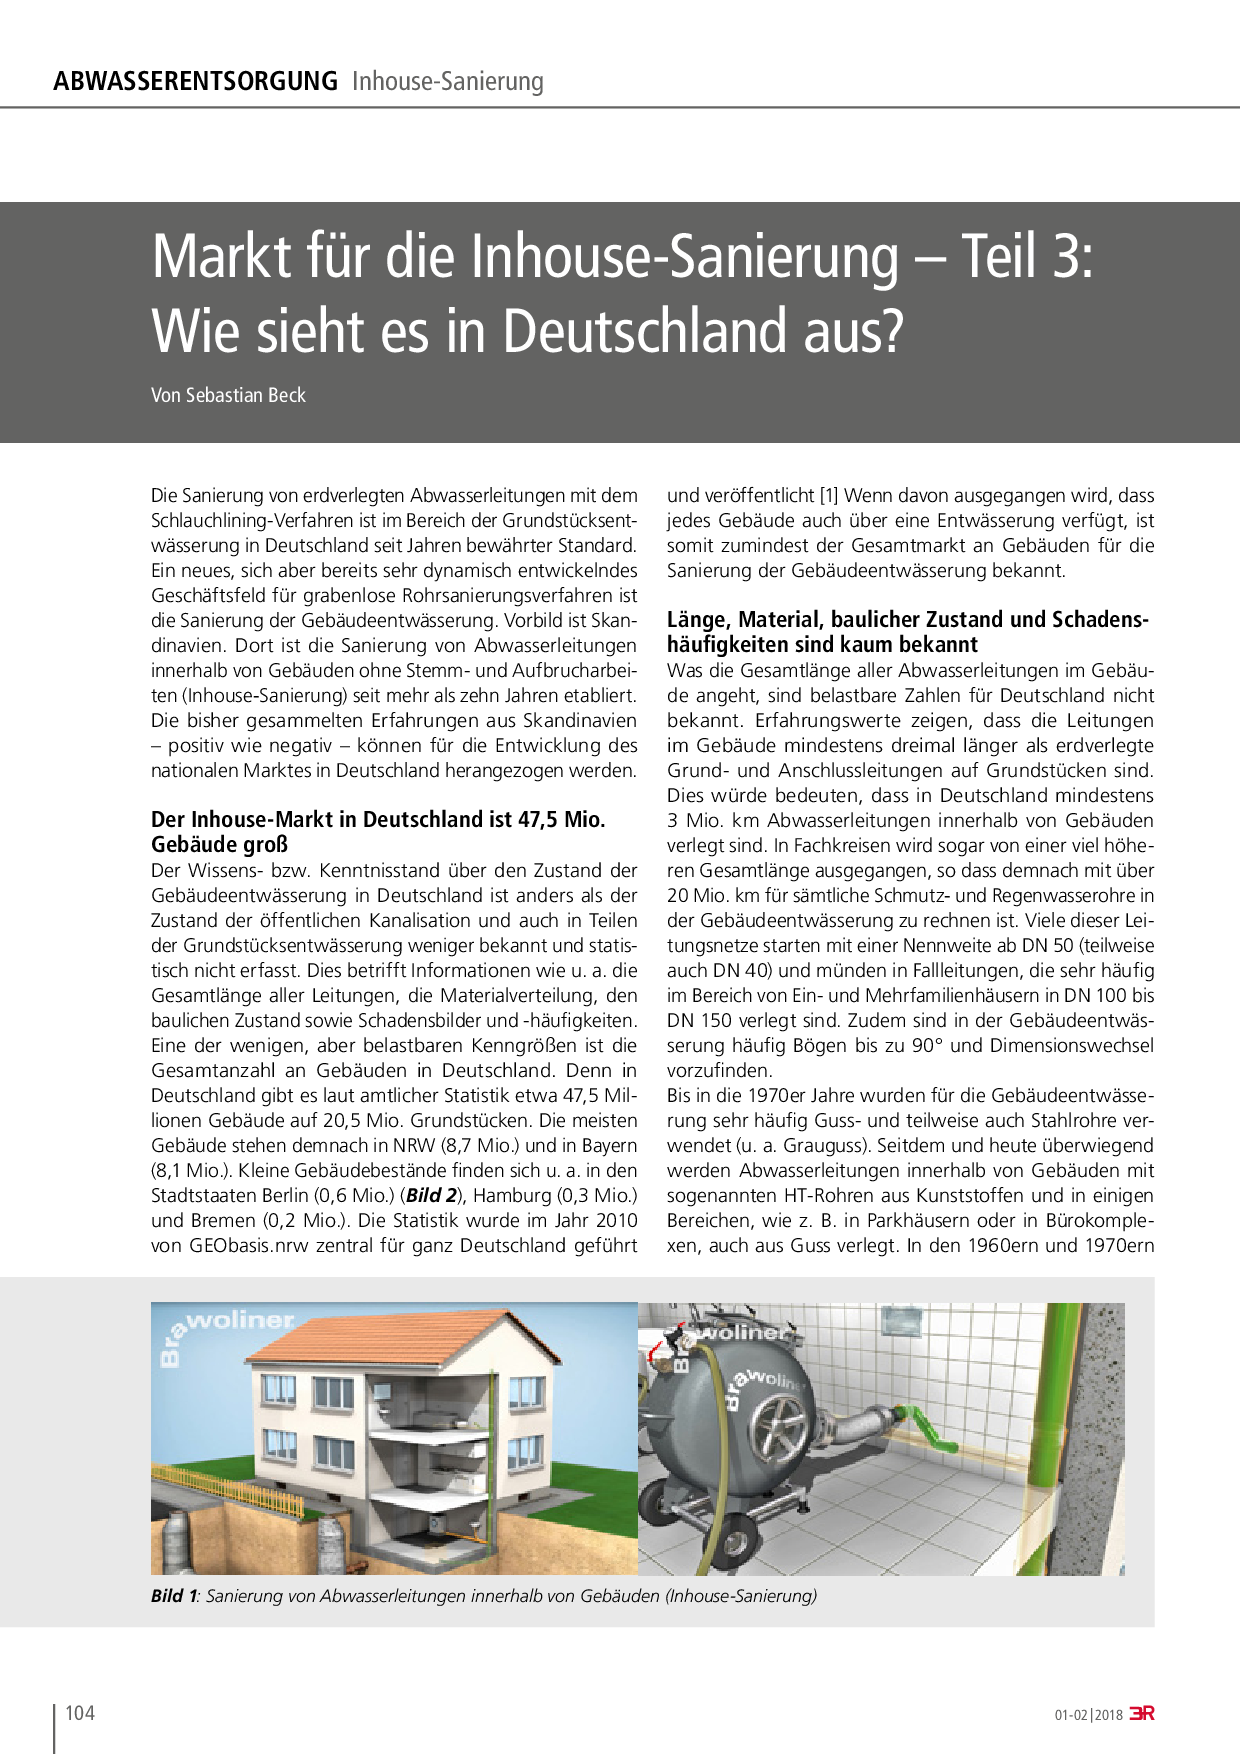 Markt für die Inhouse-Sanierung – Teil 3: Wie sieht es in Deutschland aus?